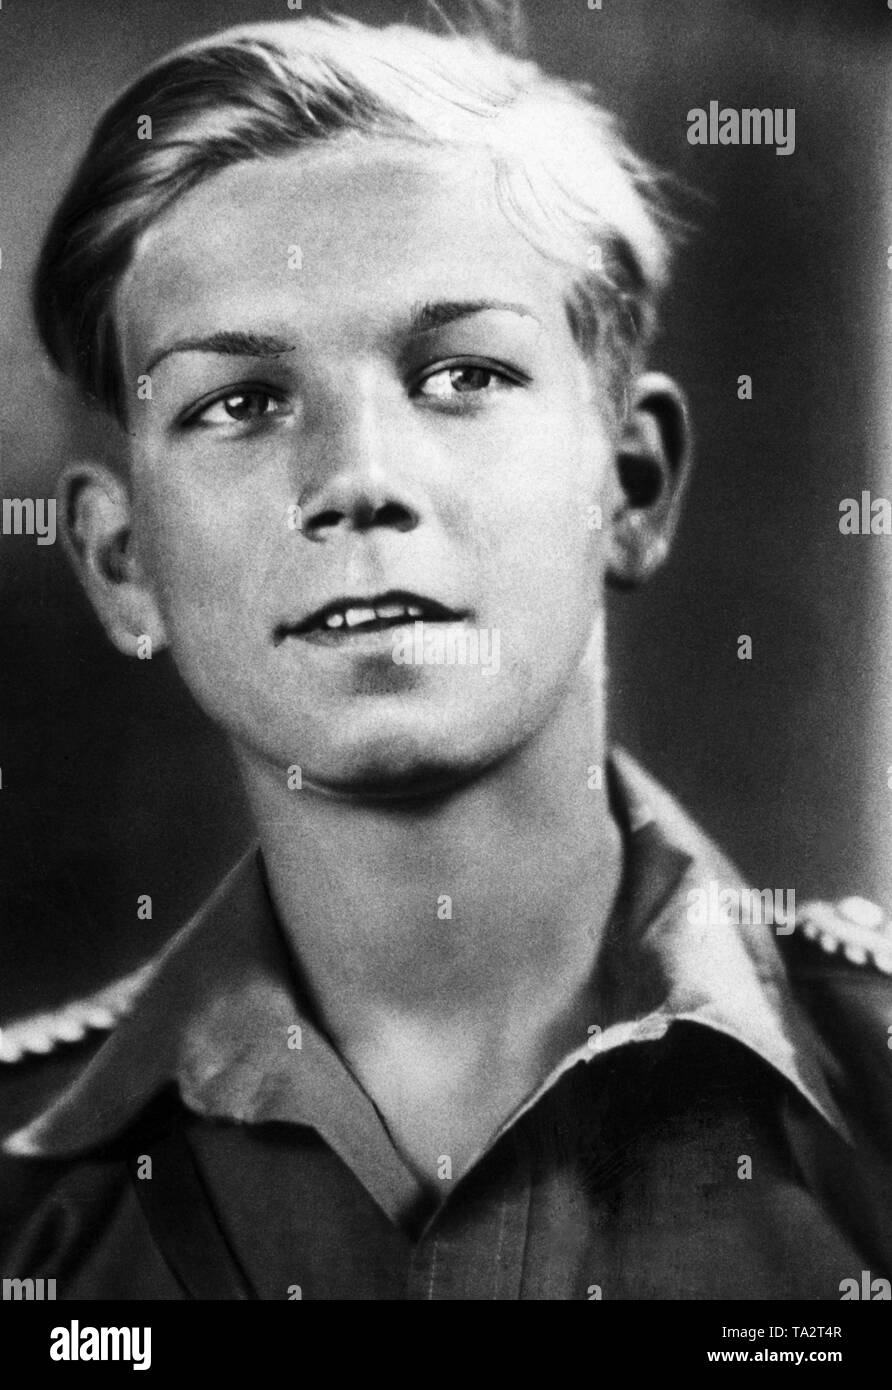 Juergen Olsen as impersonator of Heini Voelker in the Nazi propaganda film 'Hitlerjunge Quex' by Hans Steinhoff. Stock Photo